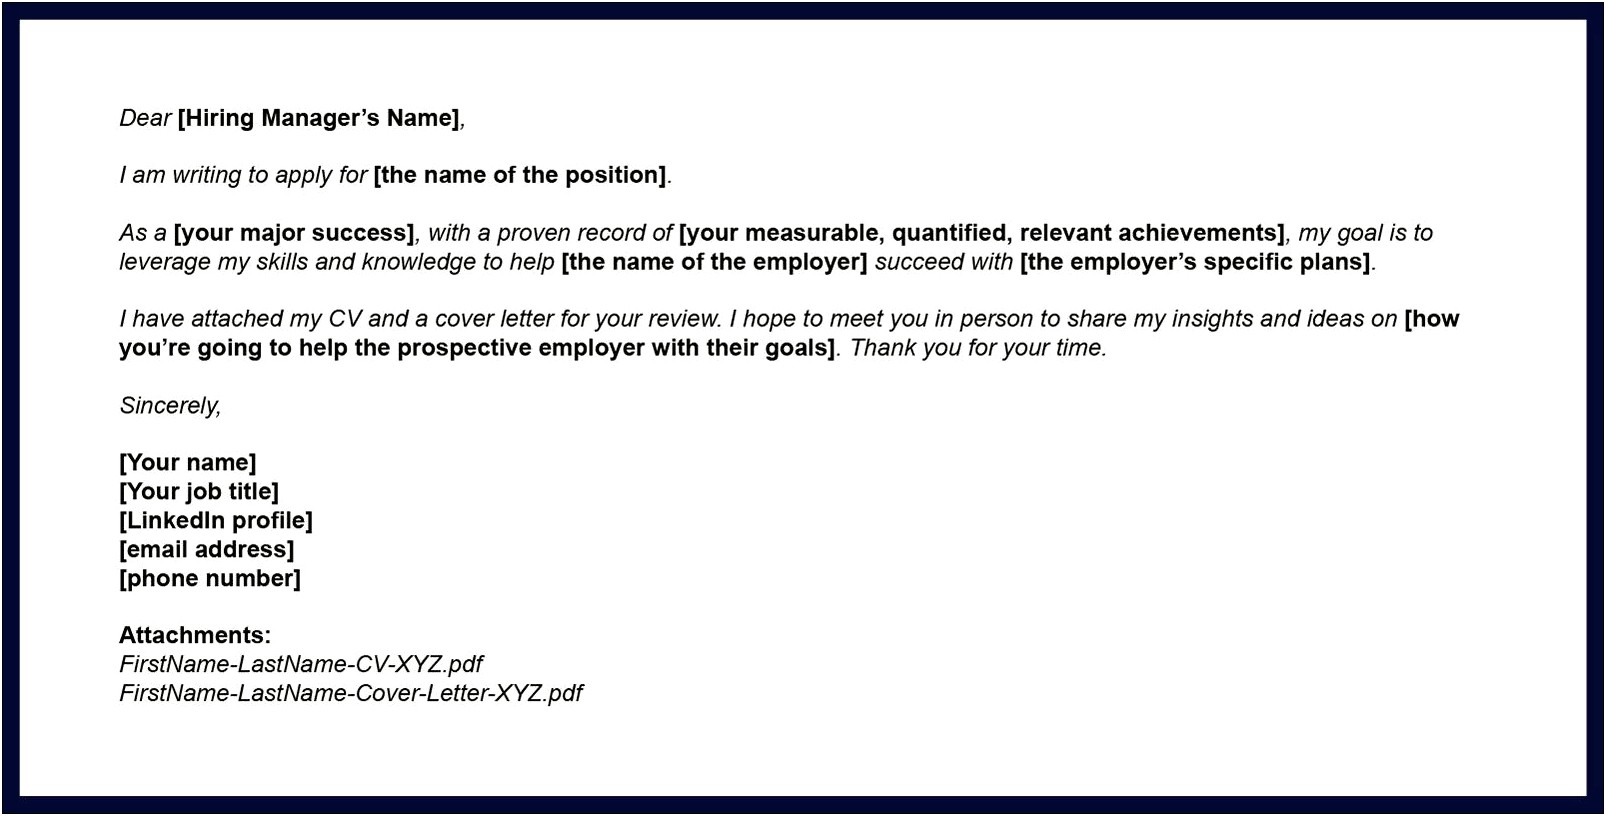 Fax Cover Letter For Sending Resume